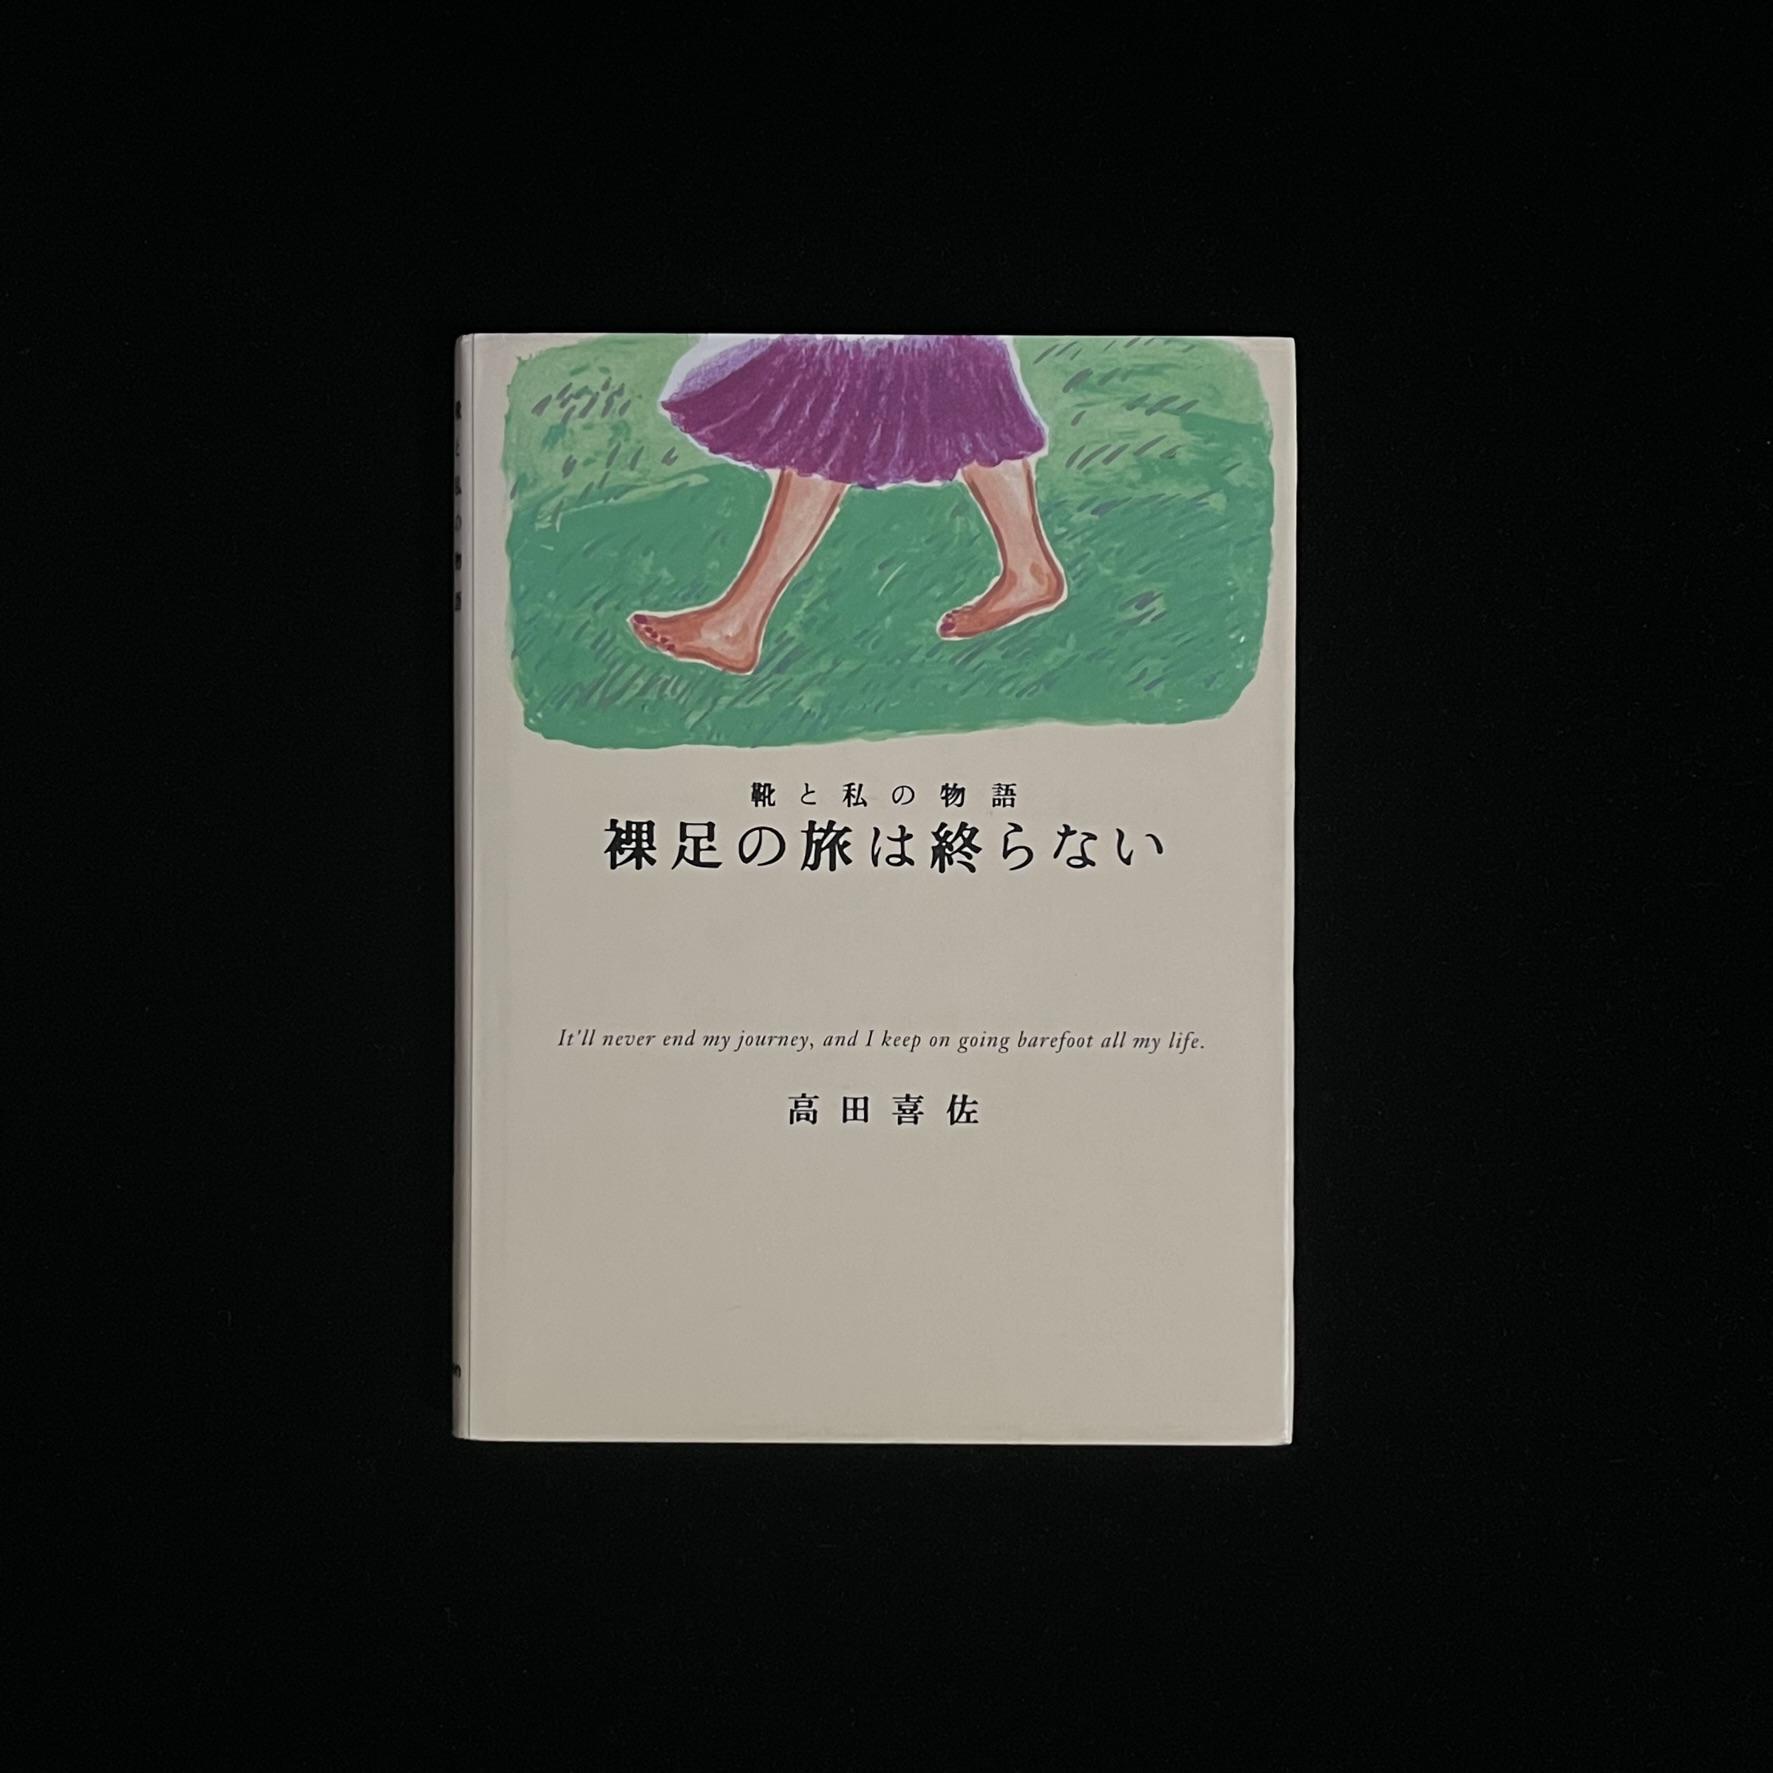 高田喜佐さんの『裸足の旅は終わらない』の表紙の写真。タイトルの上に、紫色のスカート姿の女性が緑の草の上を裸足で歩いている高田喜佐さんのイラストが描かれている。